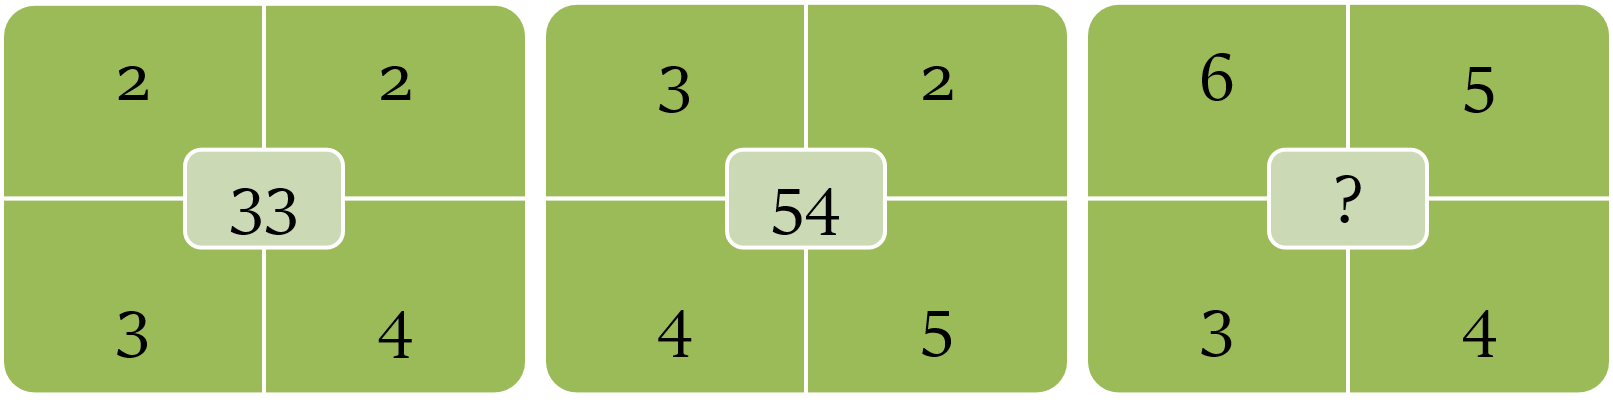 Diagram-based number series